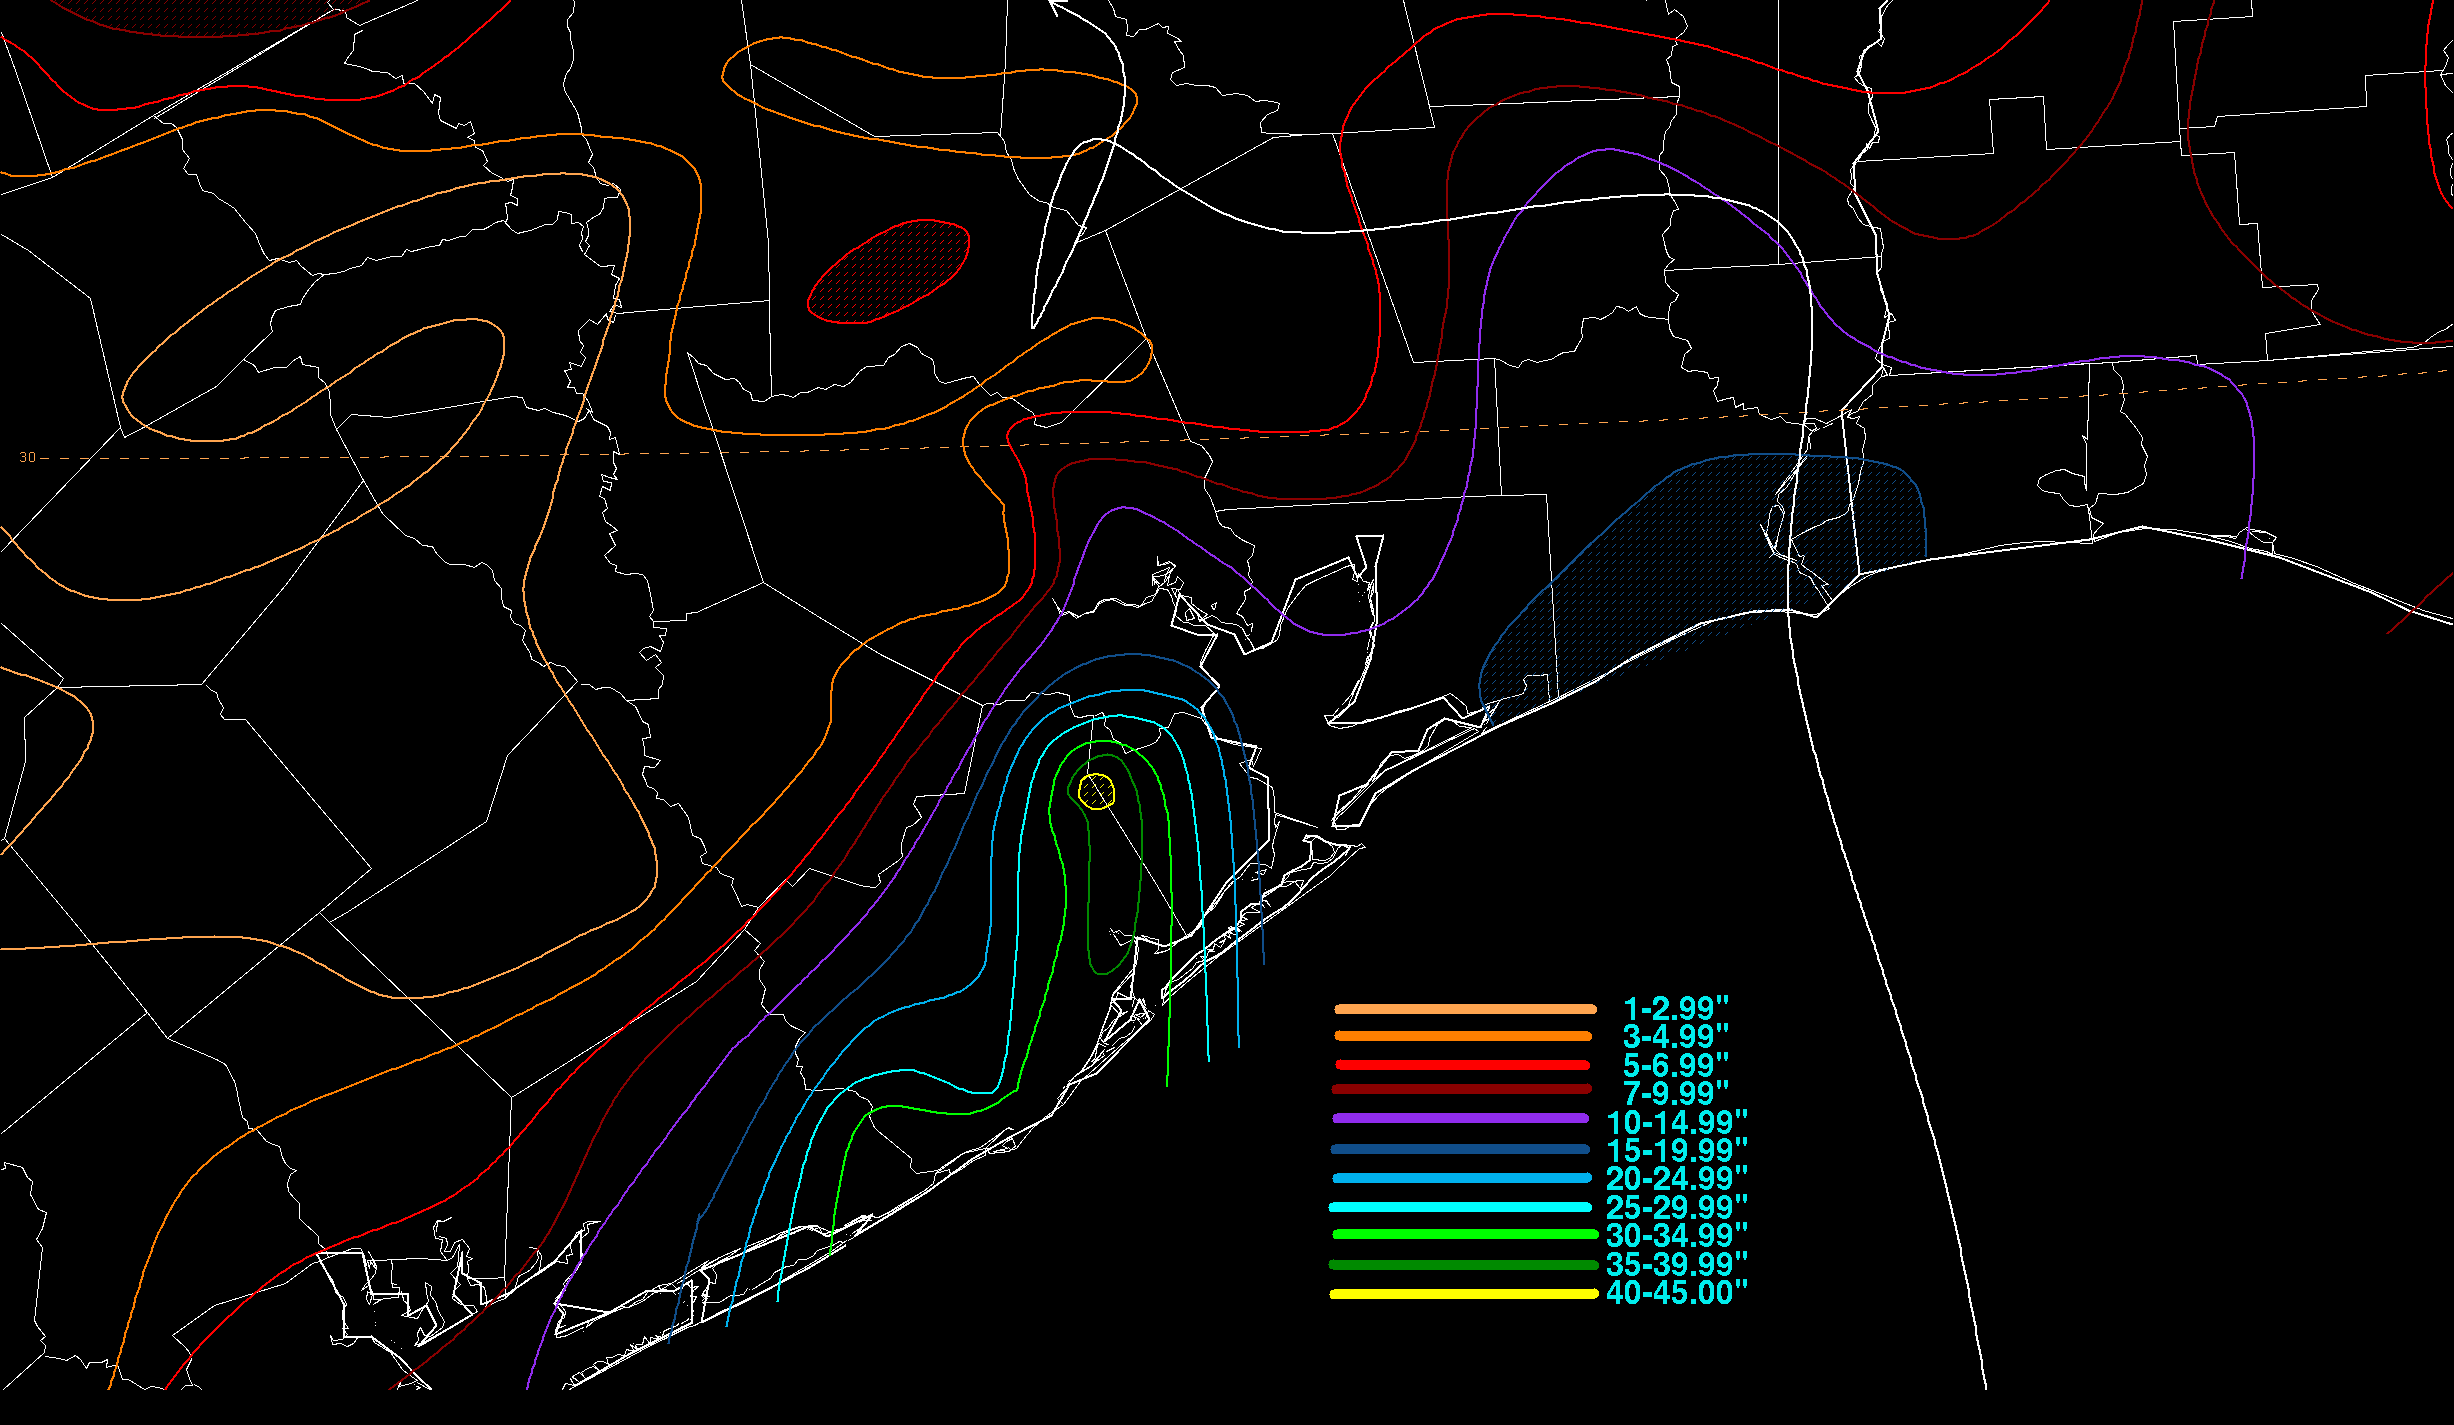 Tropical Storm Claudette (1979) Rainfall